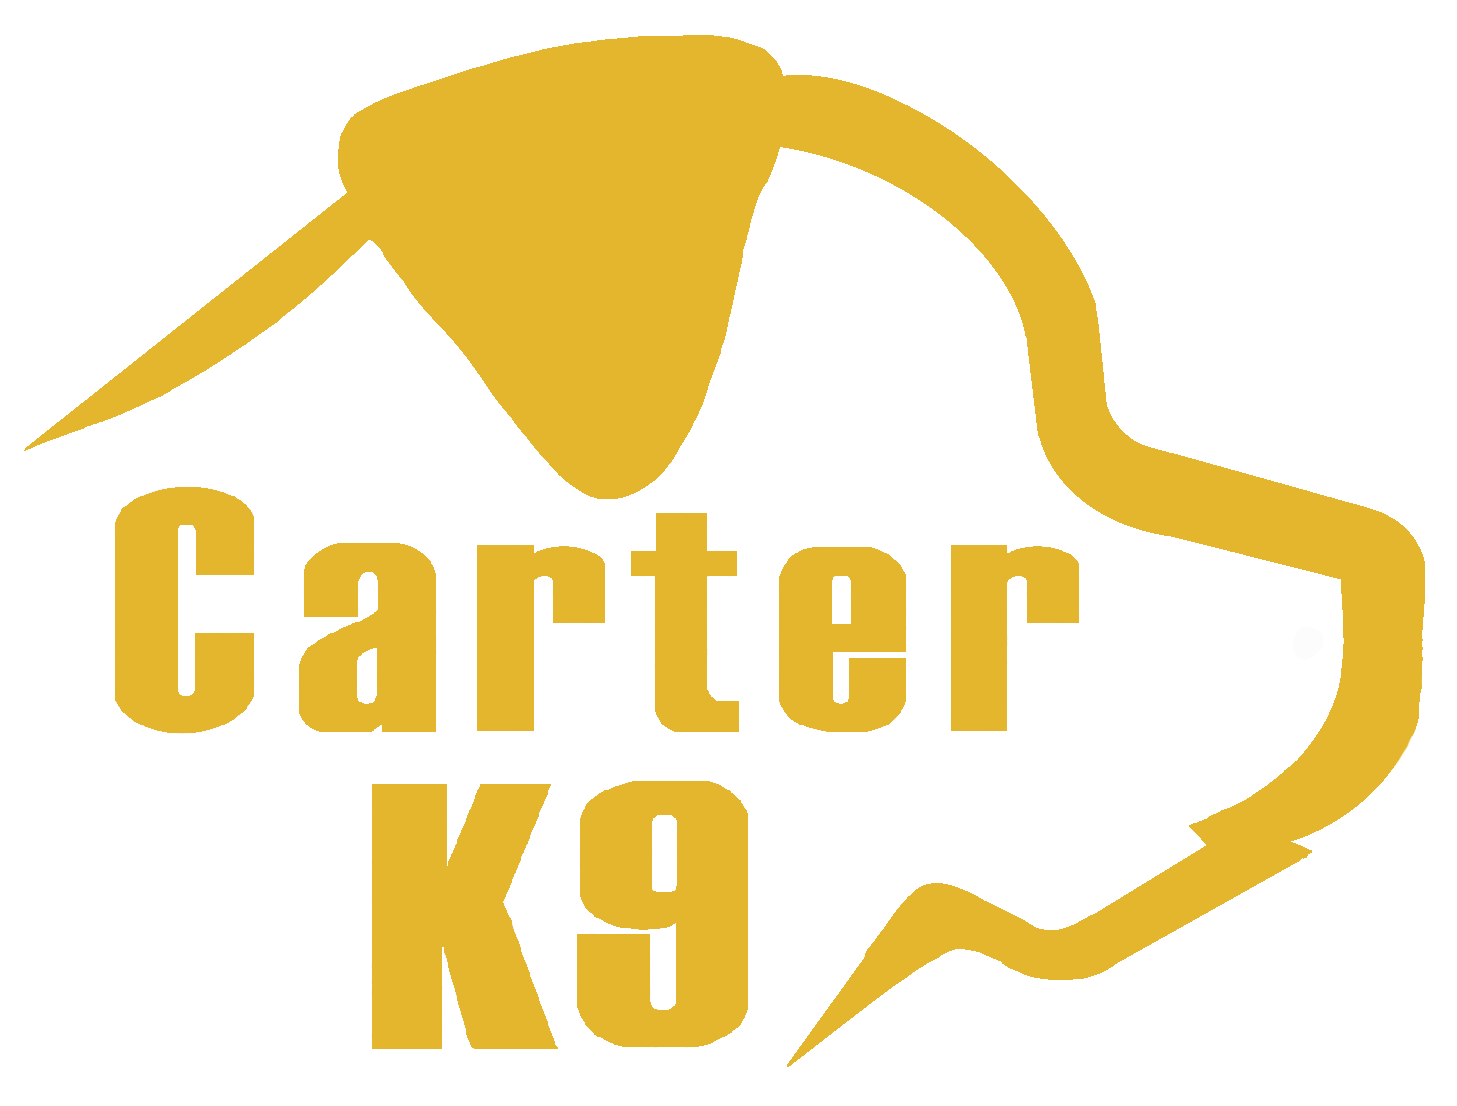 Carter K9